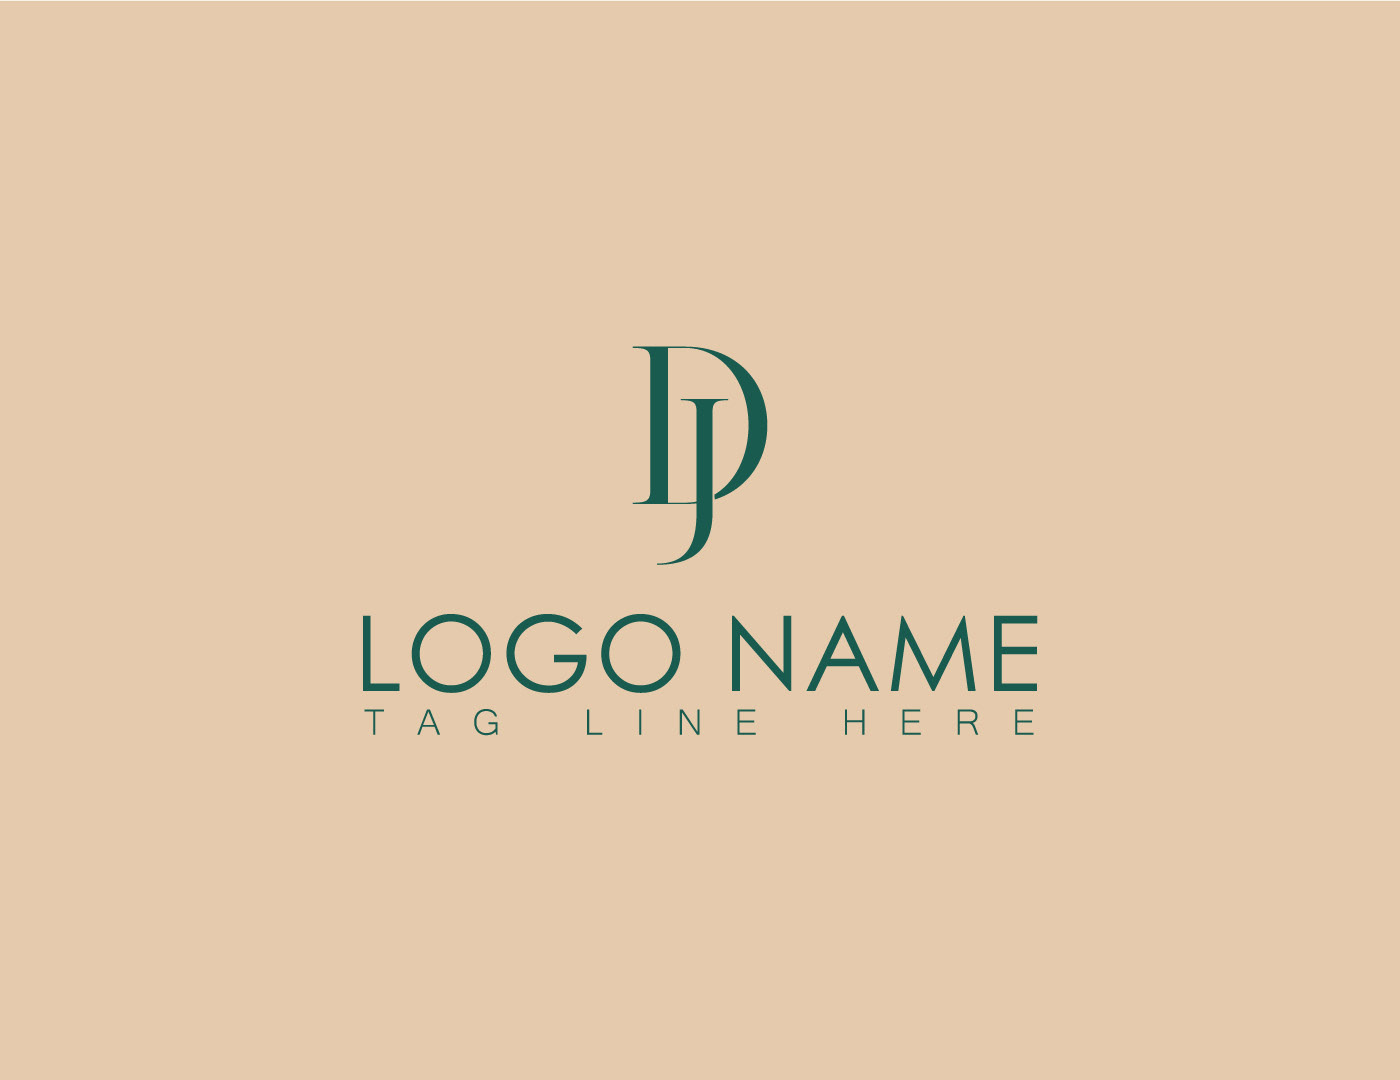 vect plus logo Logo Design best logo branding  brand identity jwellery logo shoplogo modernlogo l etter logo  logofolio